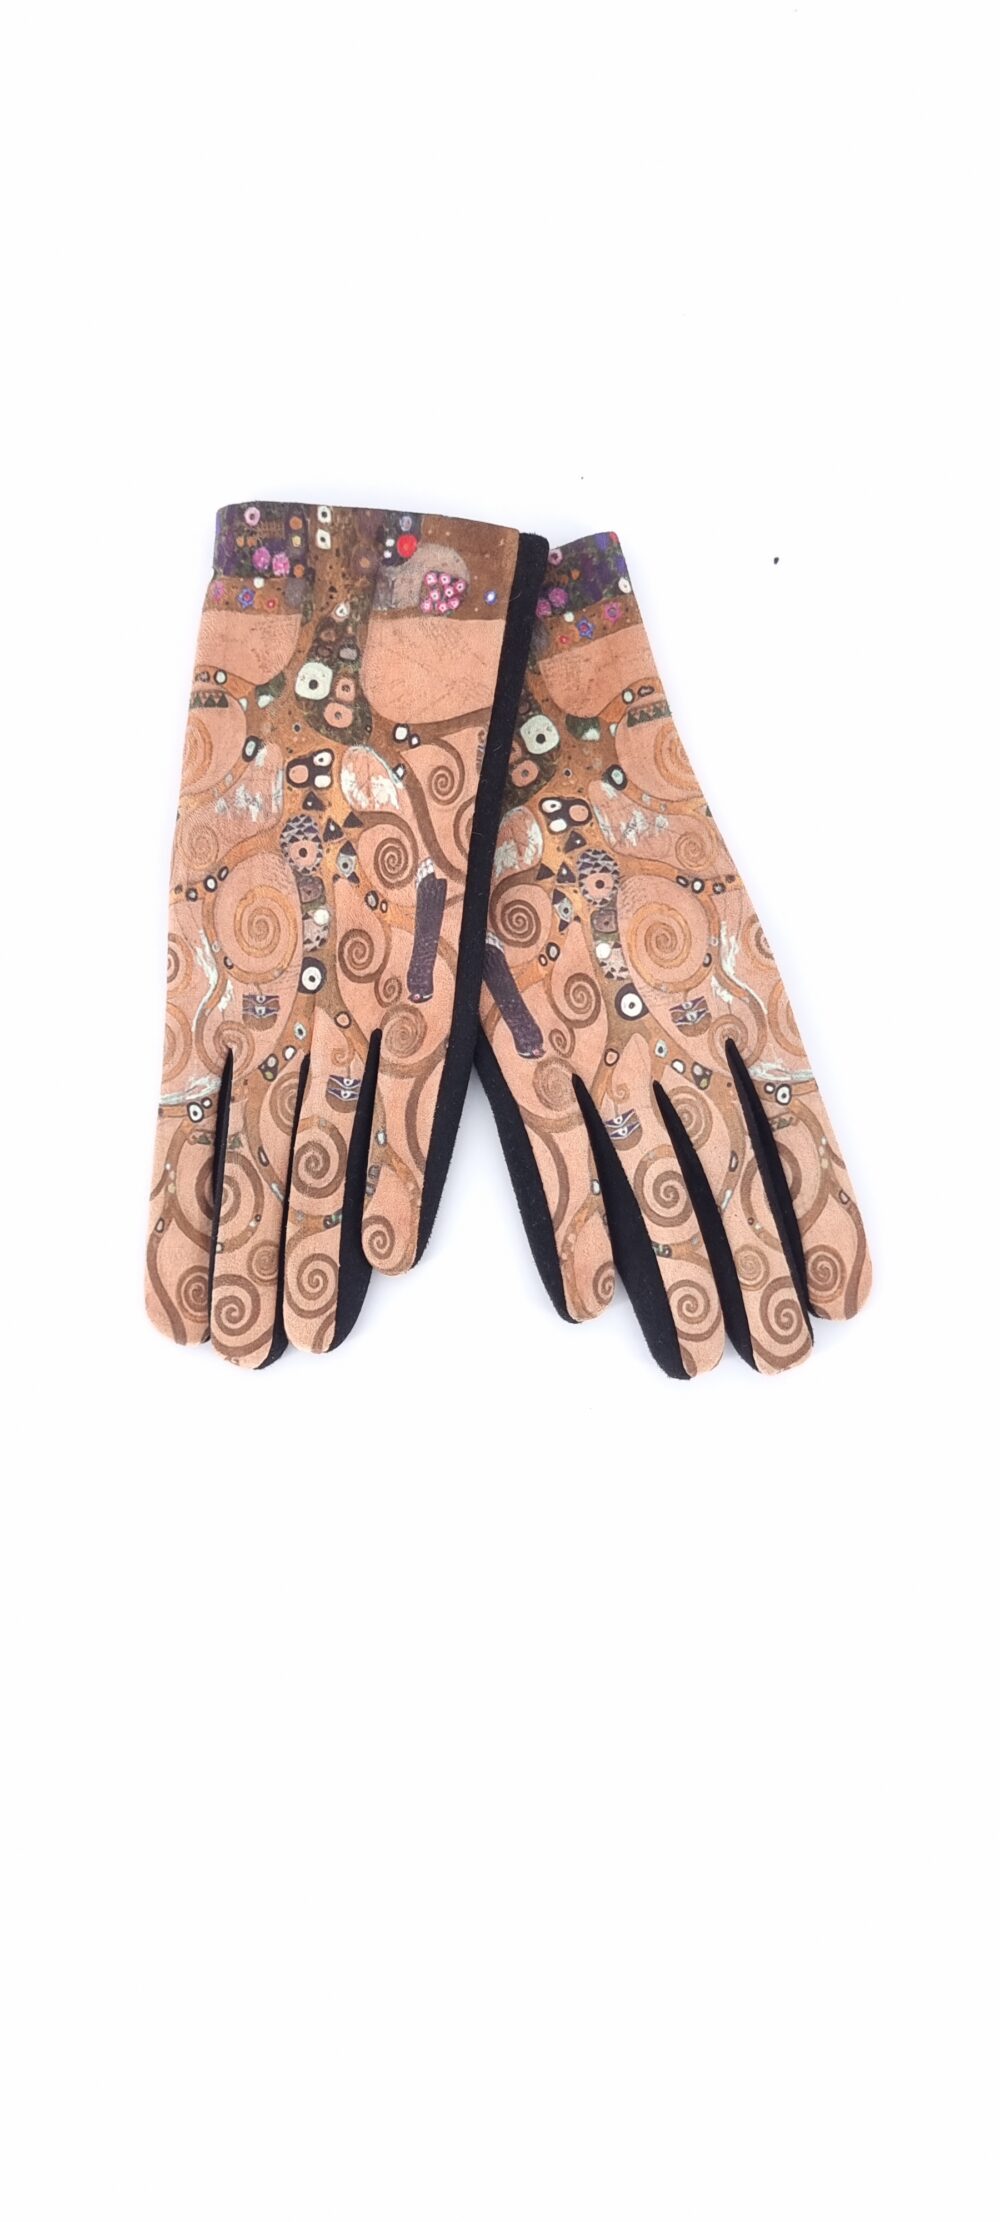 Γάντια με μοτίβο πίνακα του Klimt Το δέντρο της ζωής